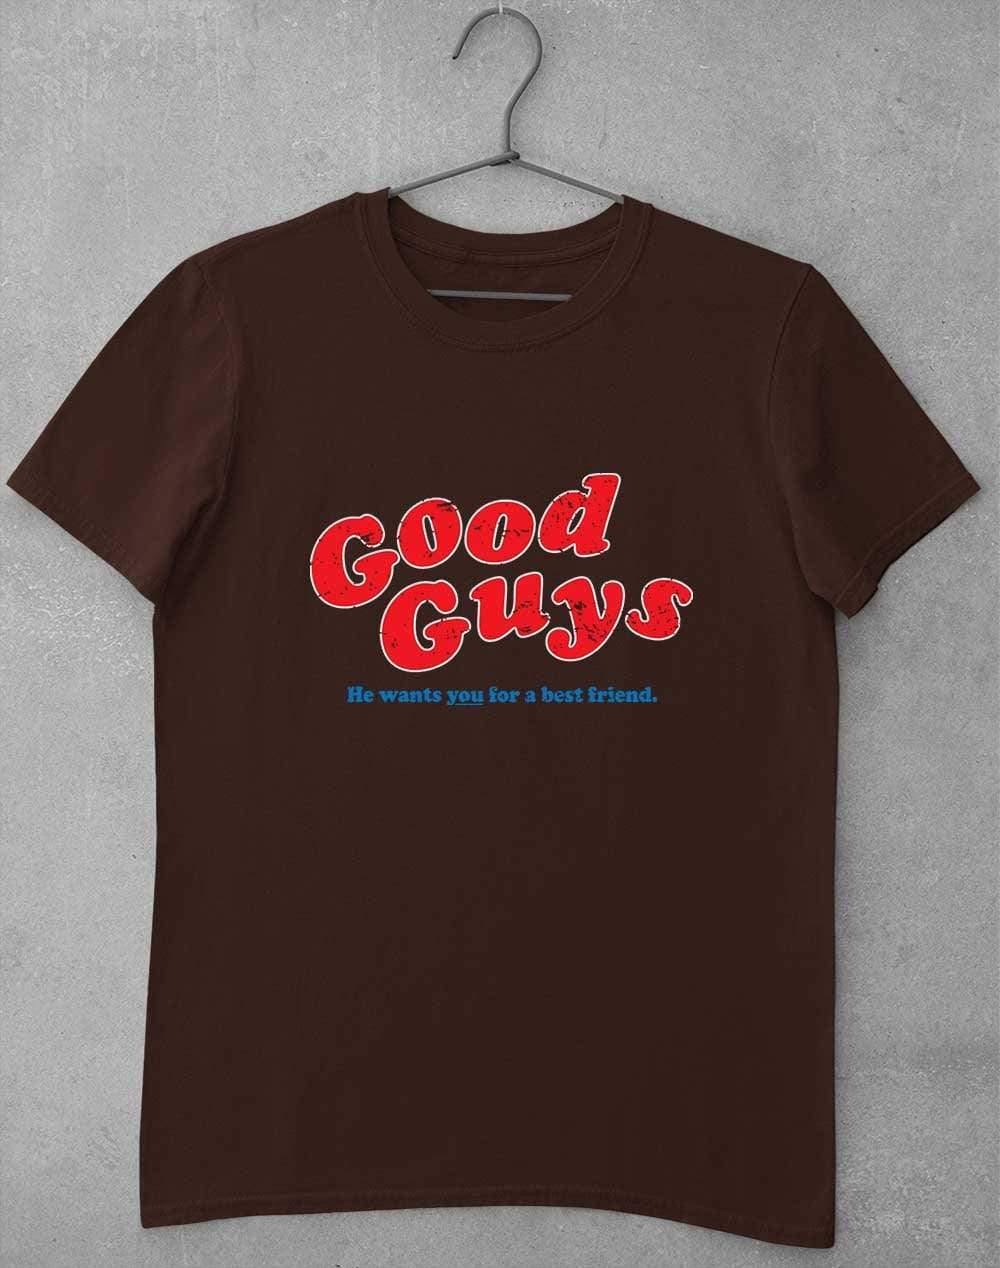 Good Guys T-Shirt S / Dark Chocolate  - Off World Tees